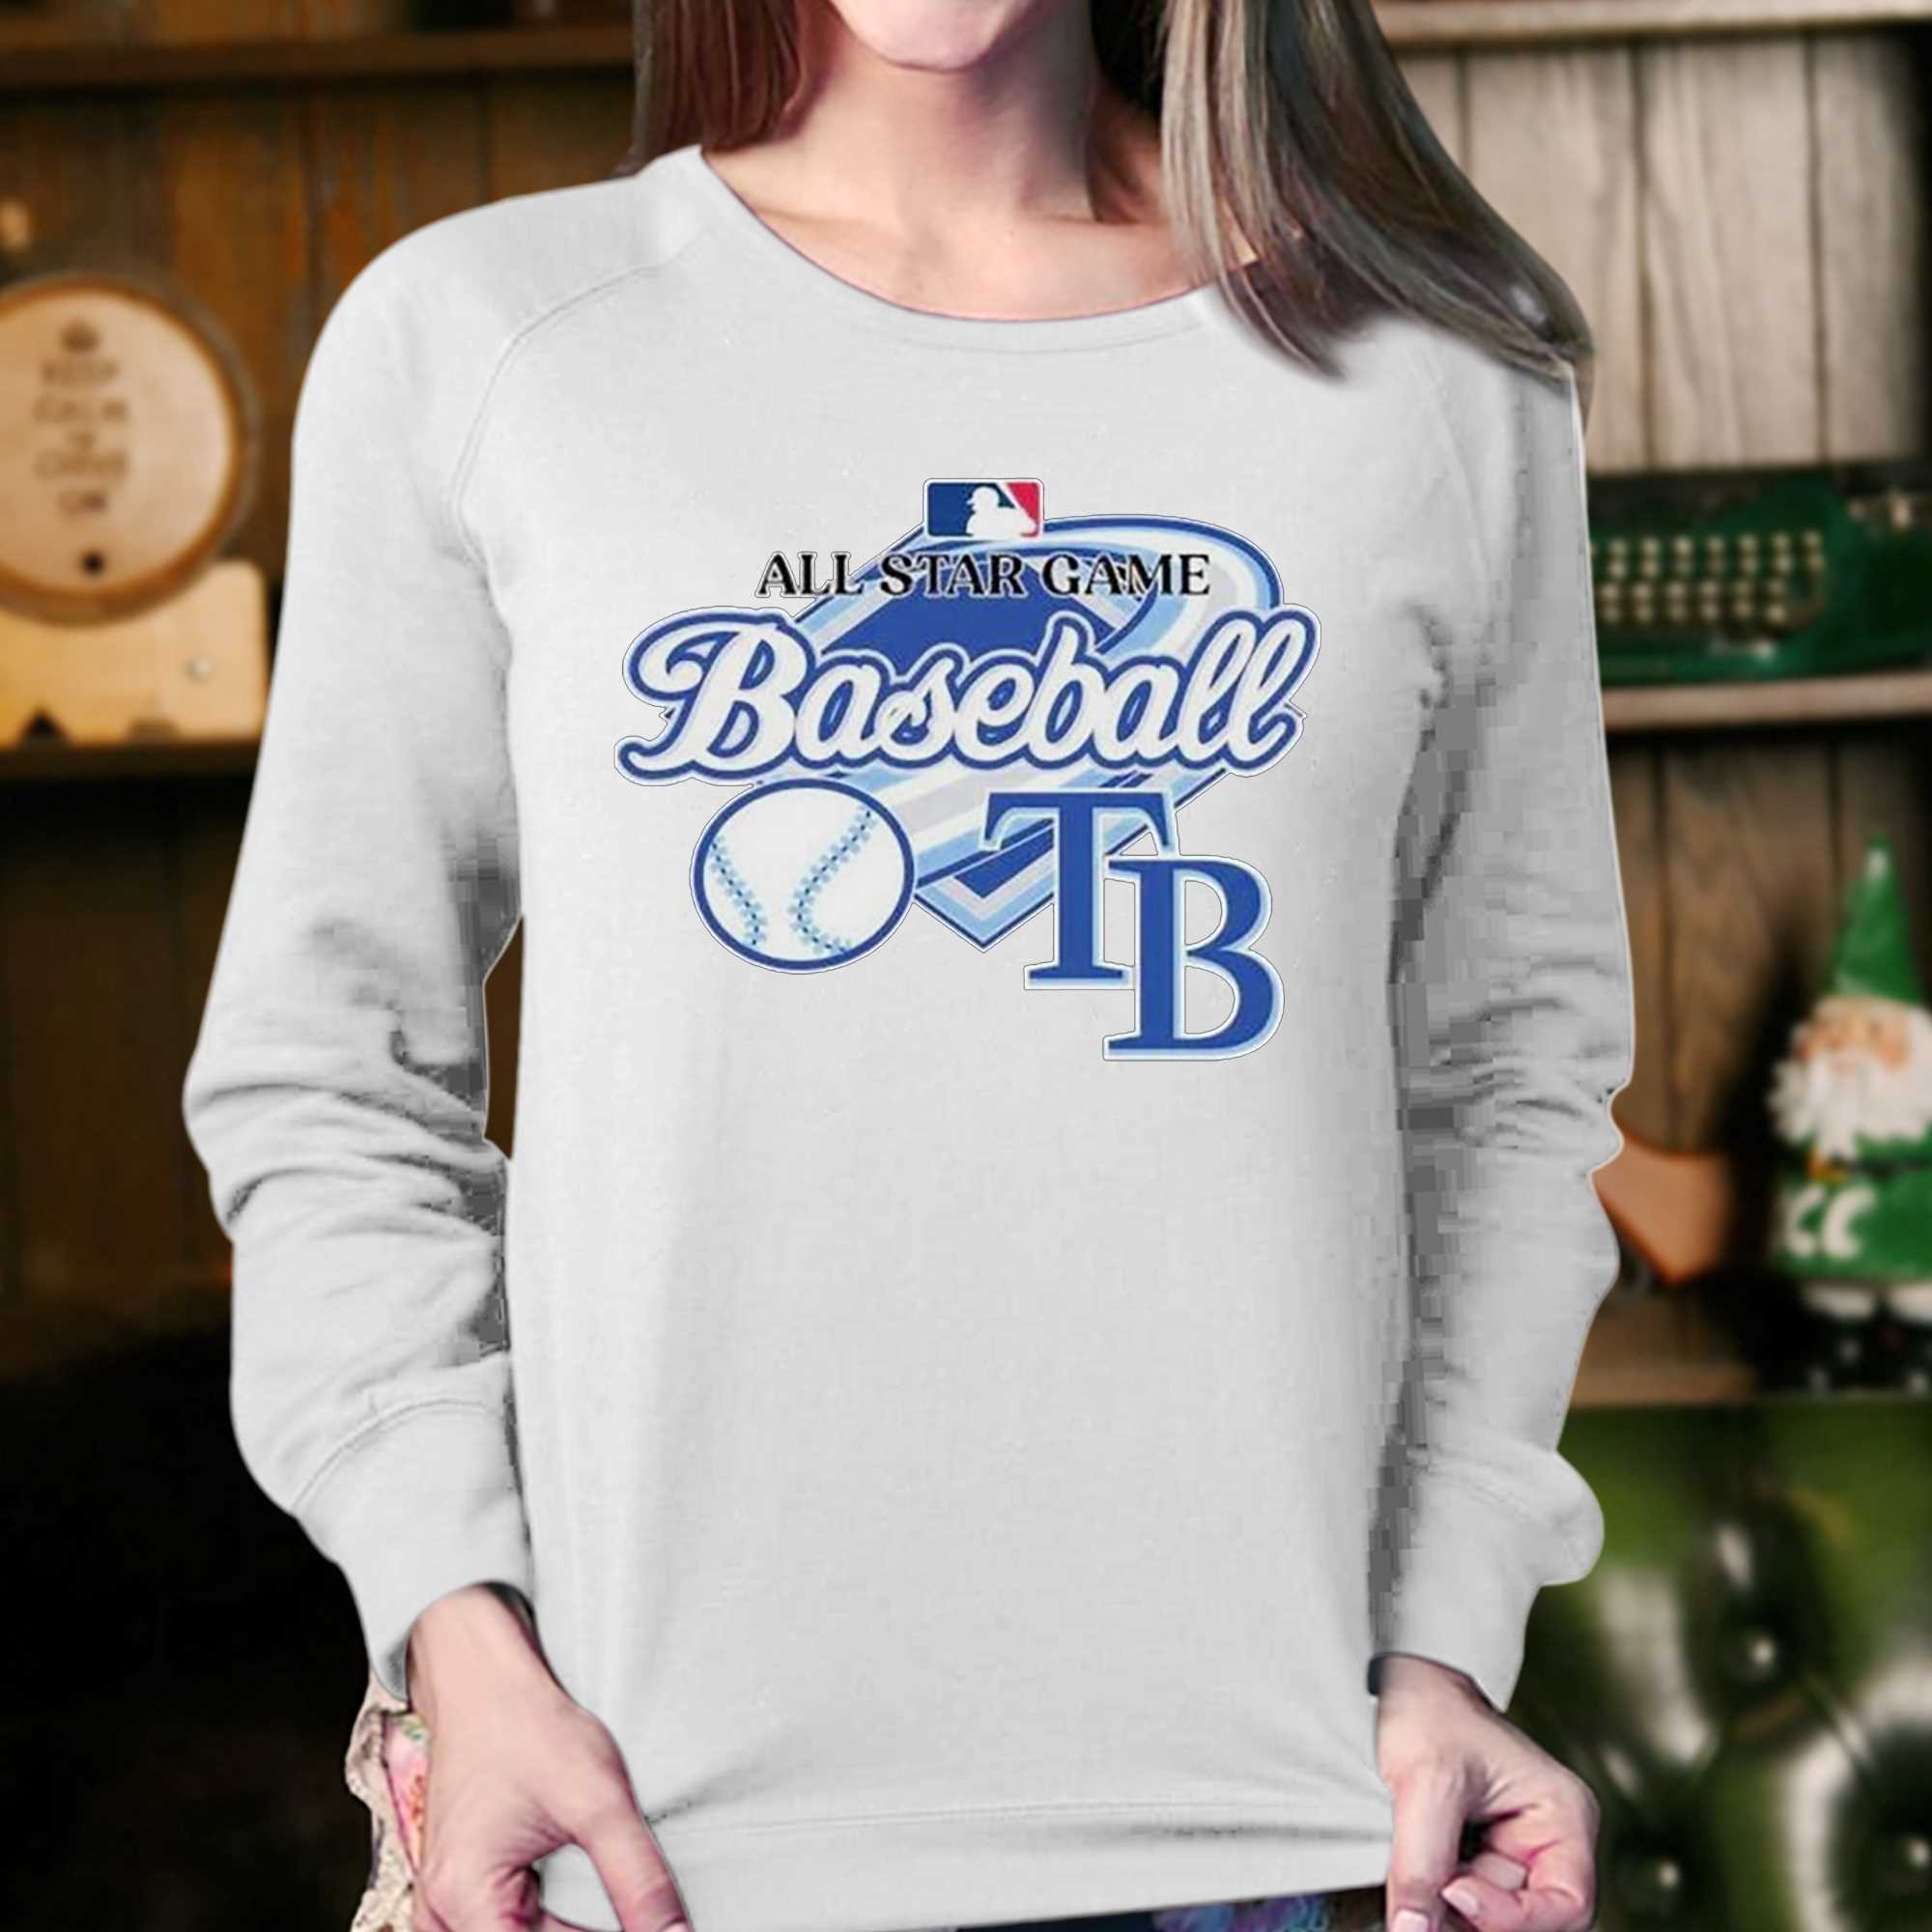 allstar baseball shirt